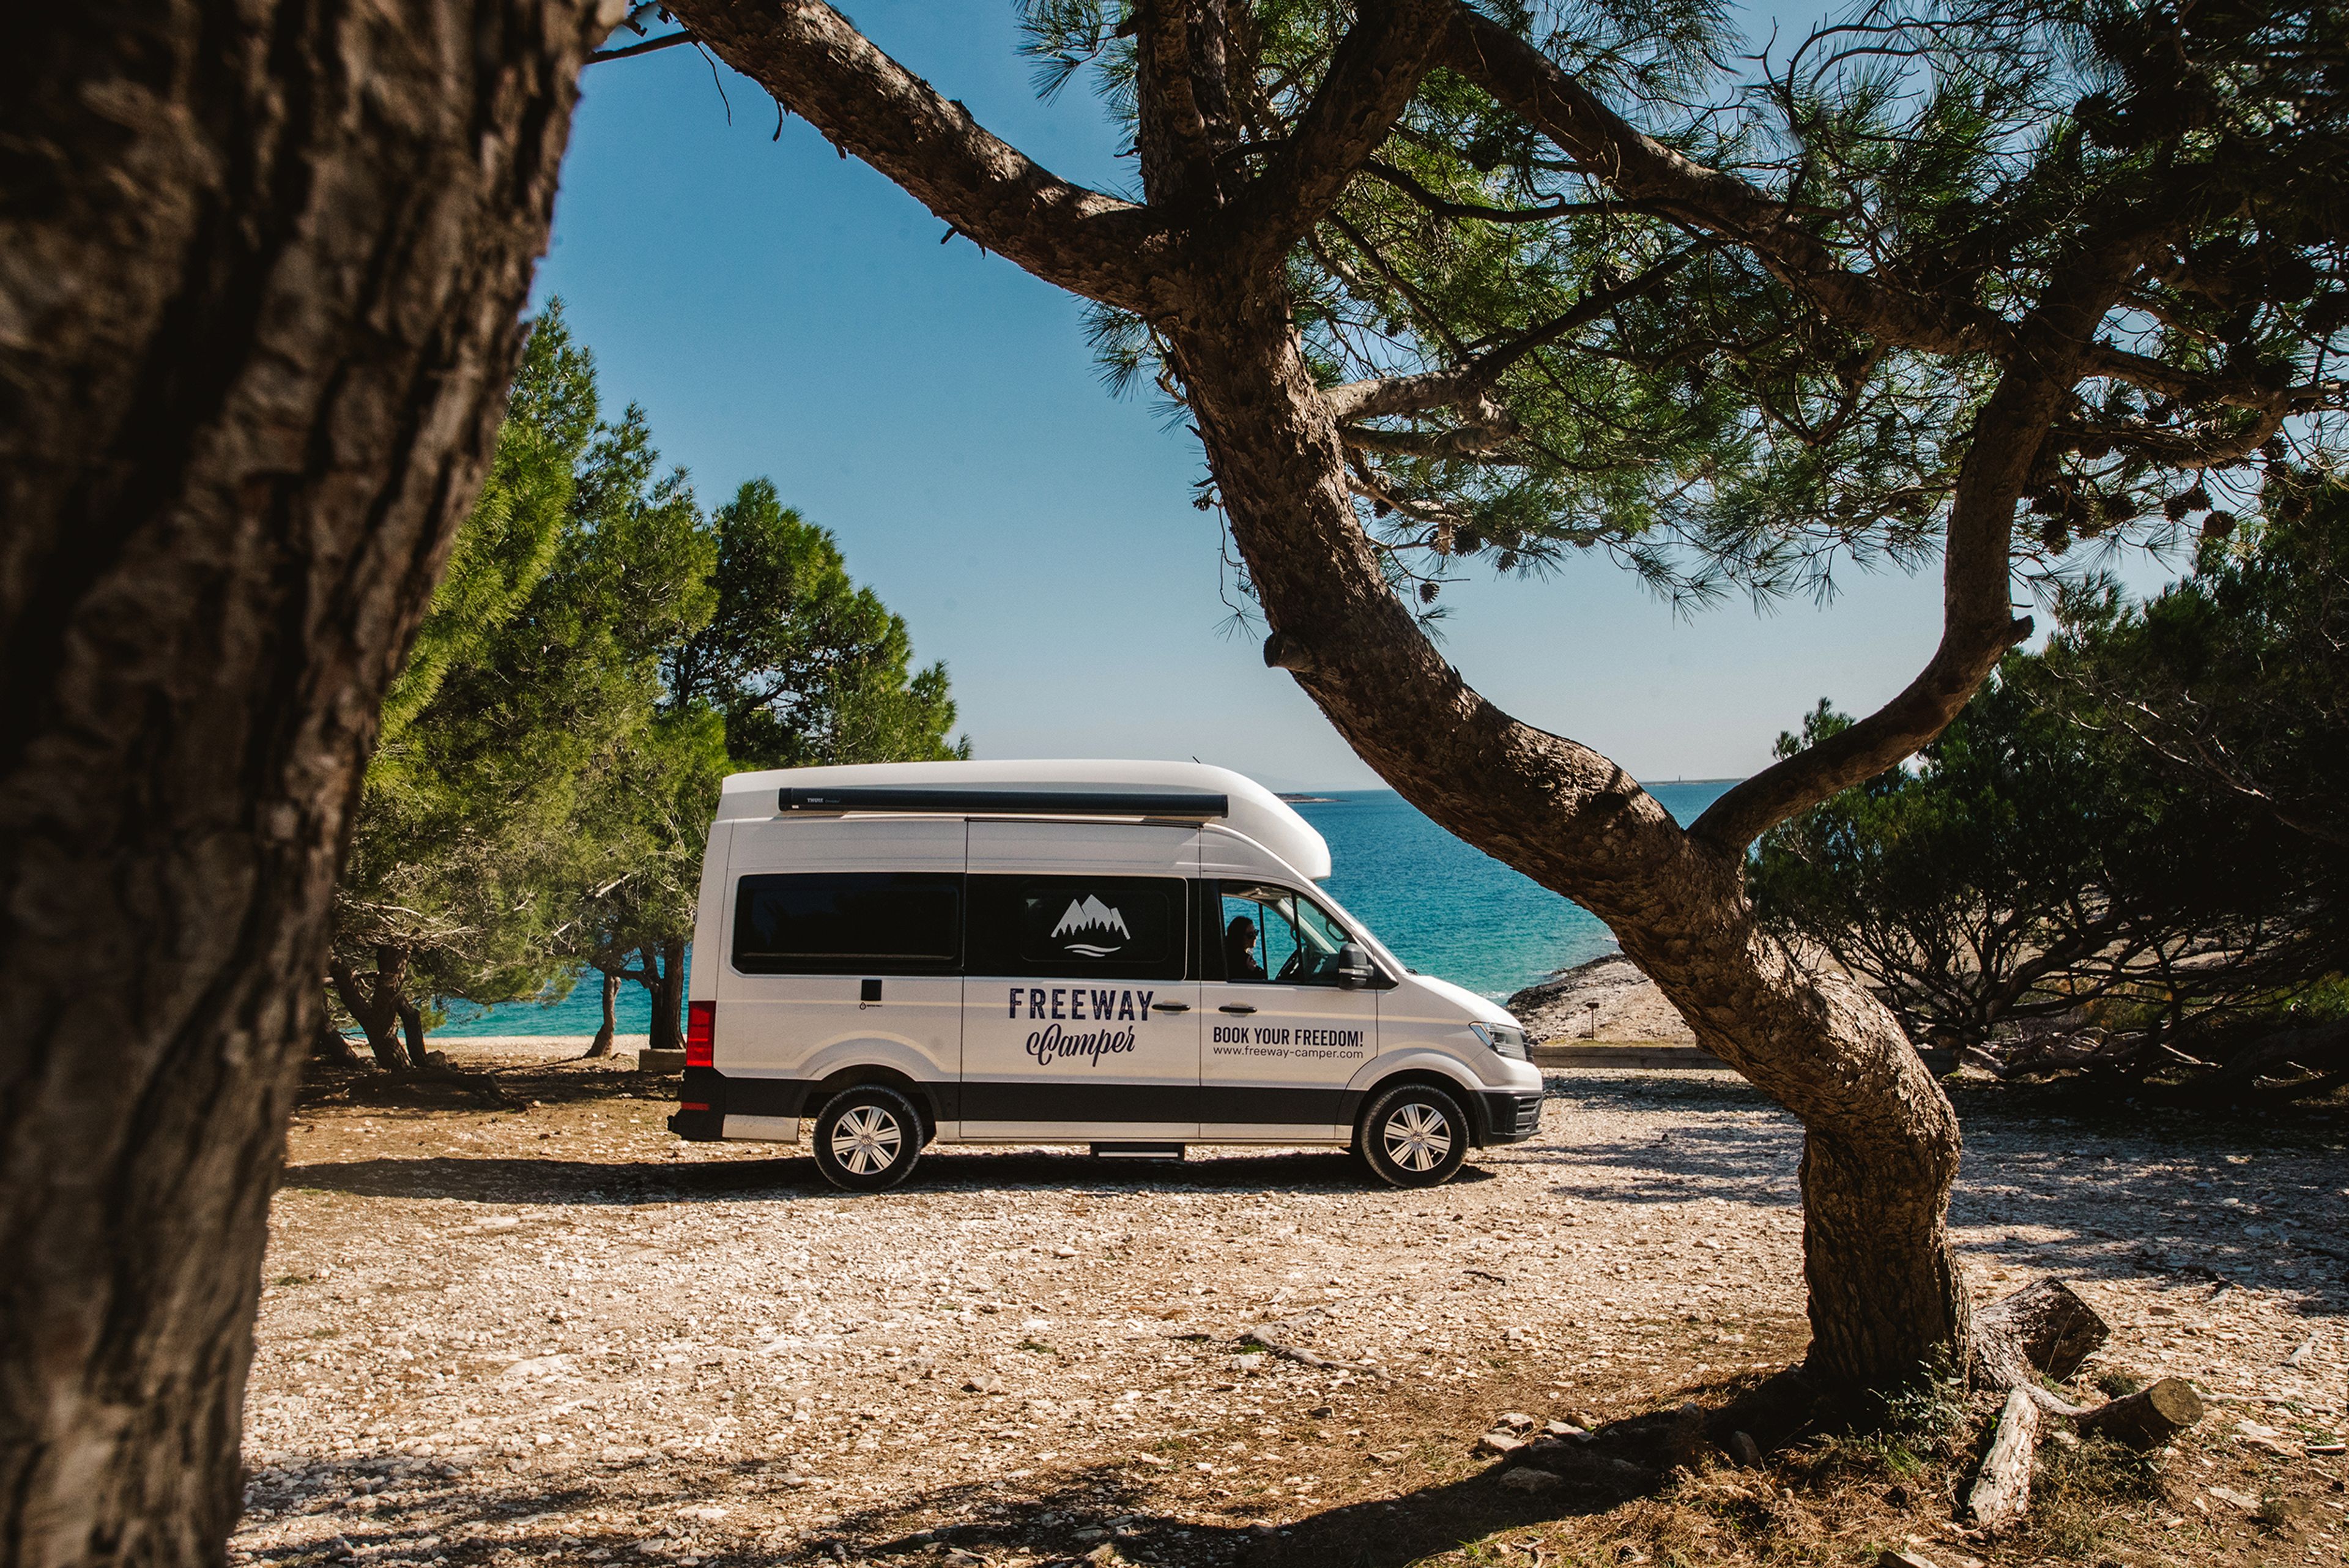 VW Grand California camper van e campeggio libero in Italia in riva al mare